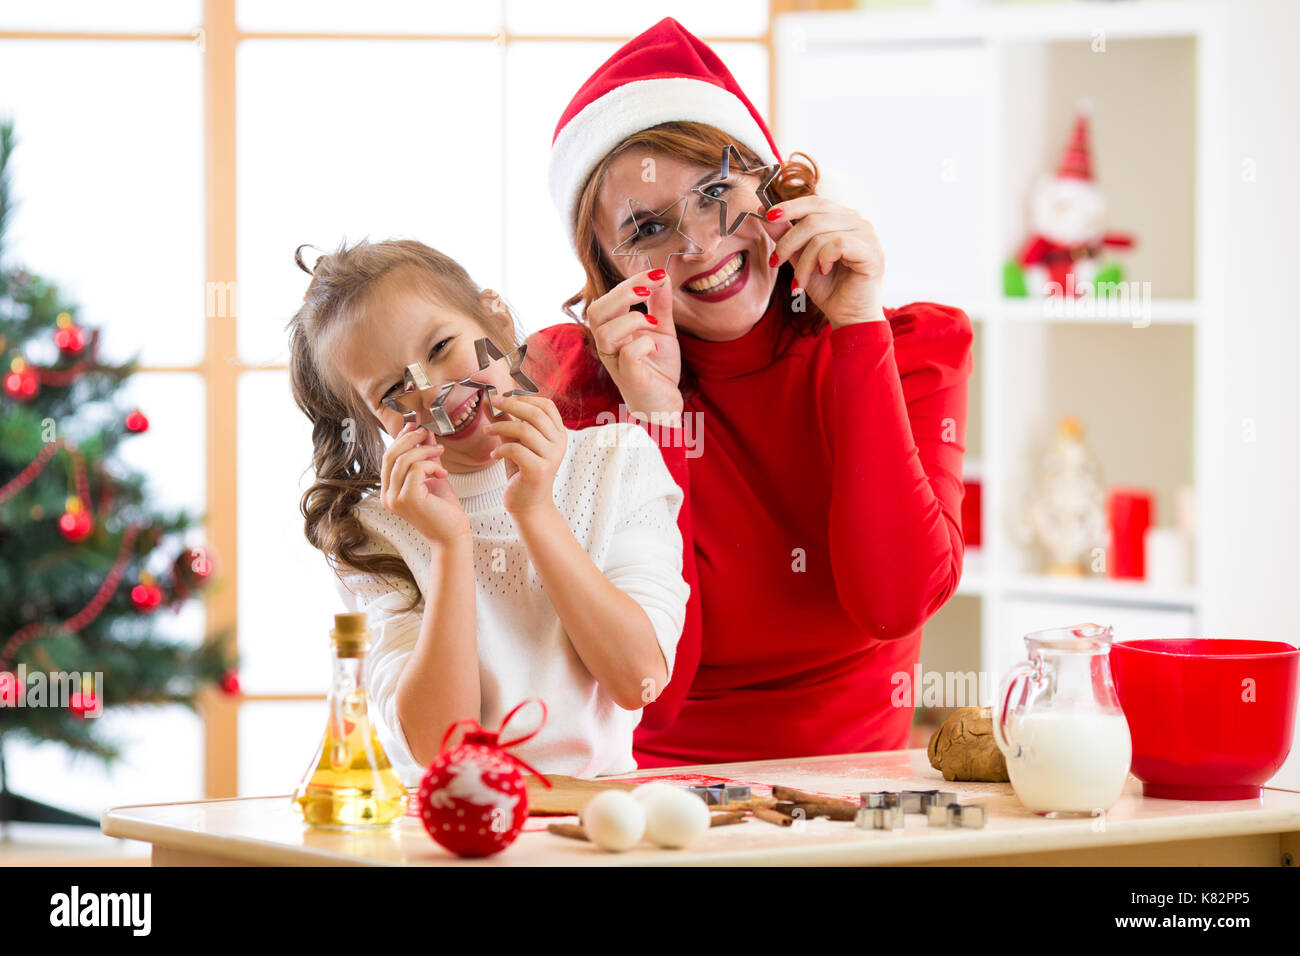 Mère et fille baking christmas cookies. enfant et femme autour de blagues pour la modélisation de forme Banque D'Images